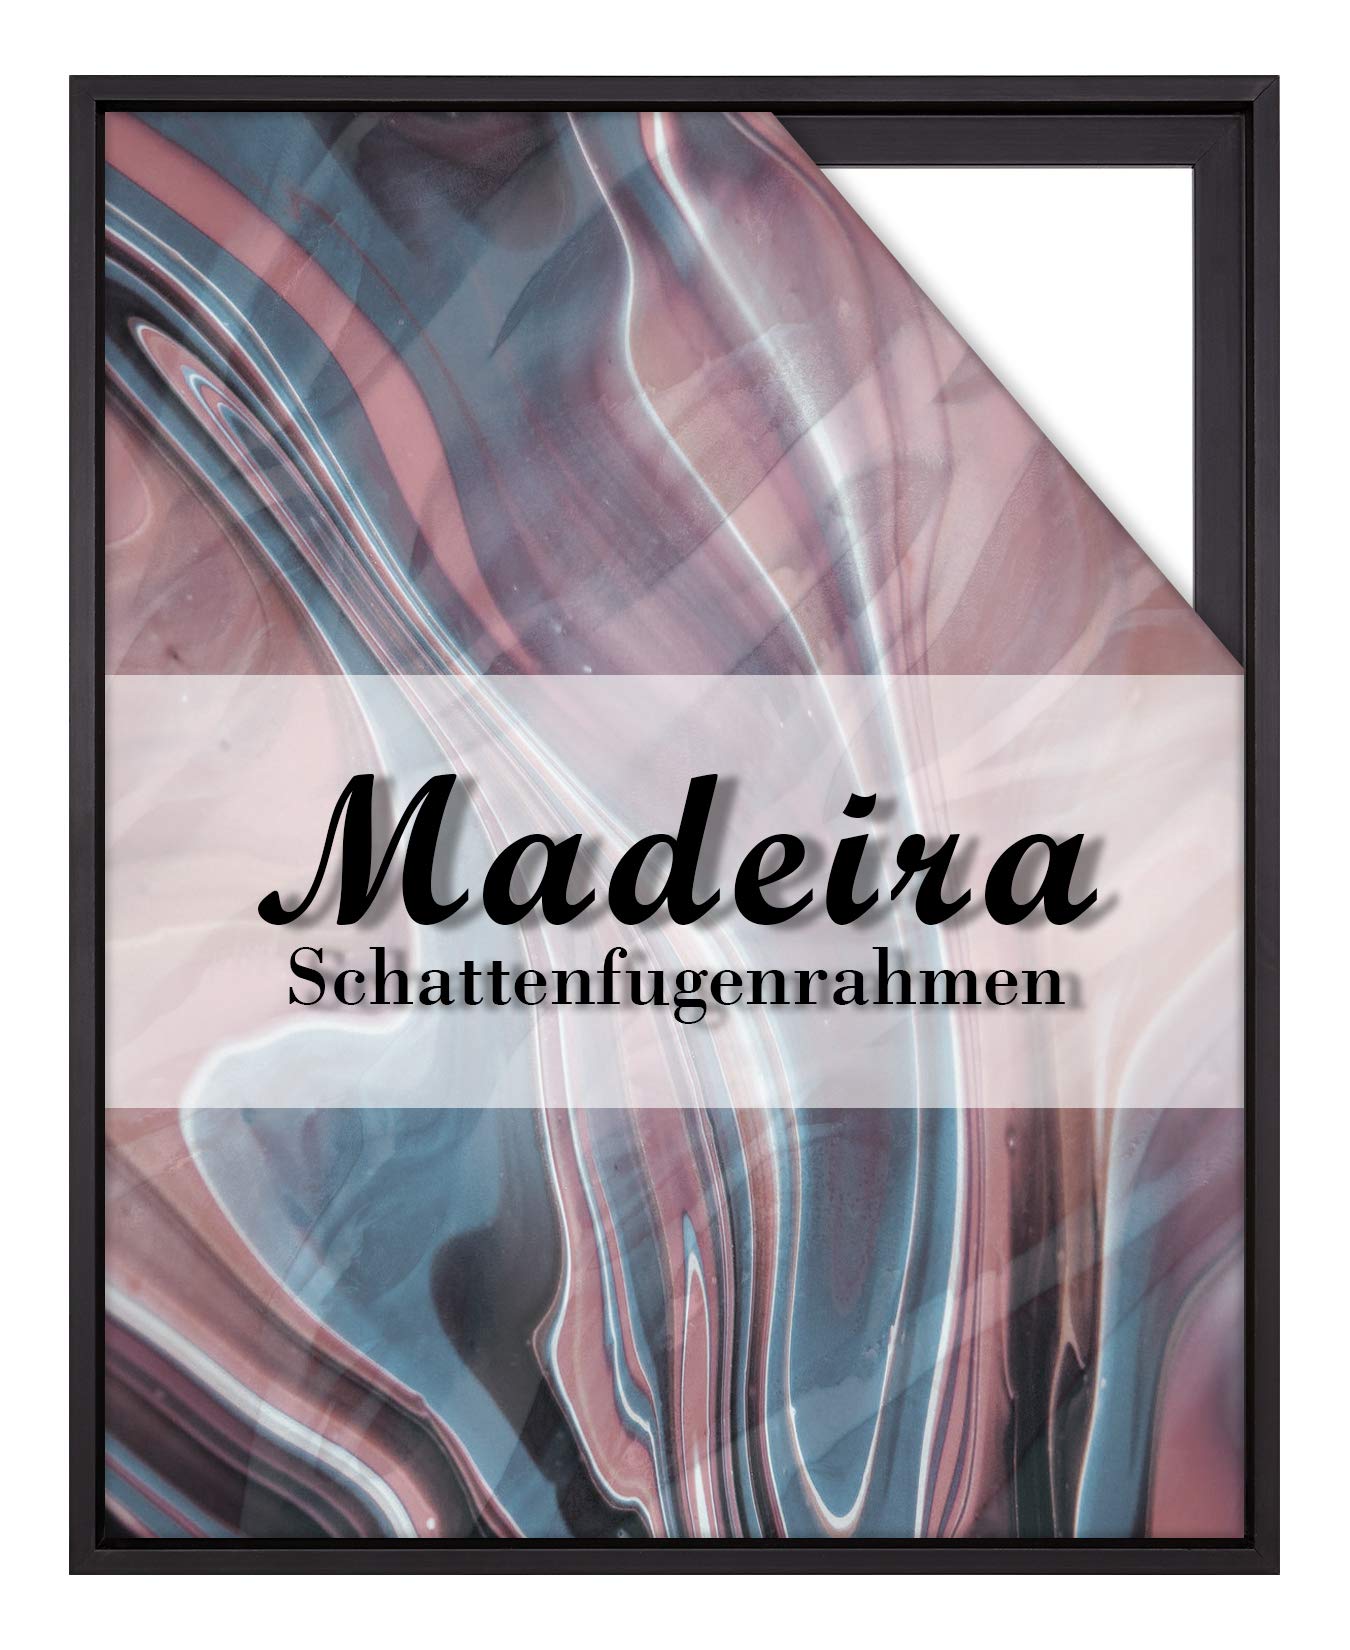 BIRAPA Madeira Schattenfugenrahmen für Leinwand 60x60 cm in Schwarz, Holzrahmen, Rahmen für Leinwände, Leerrahmen für Leinwand, Schattenfugenrahmen für Keilrahmen